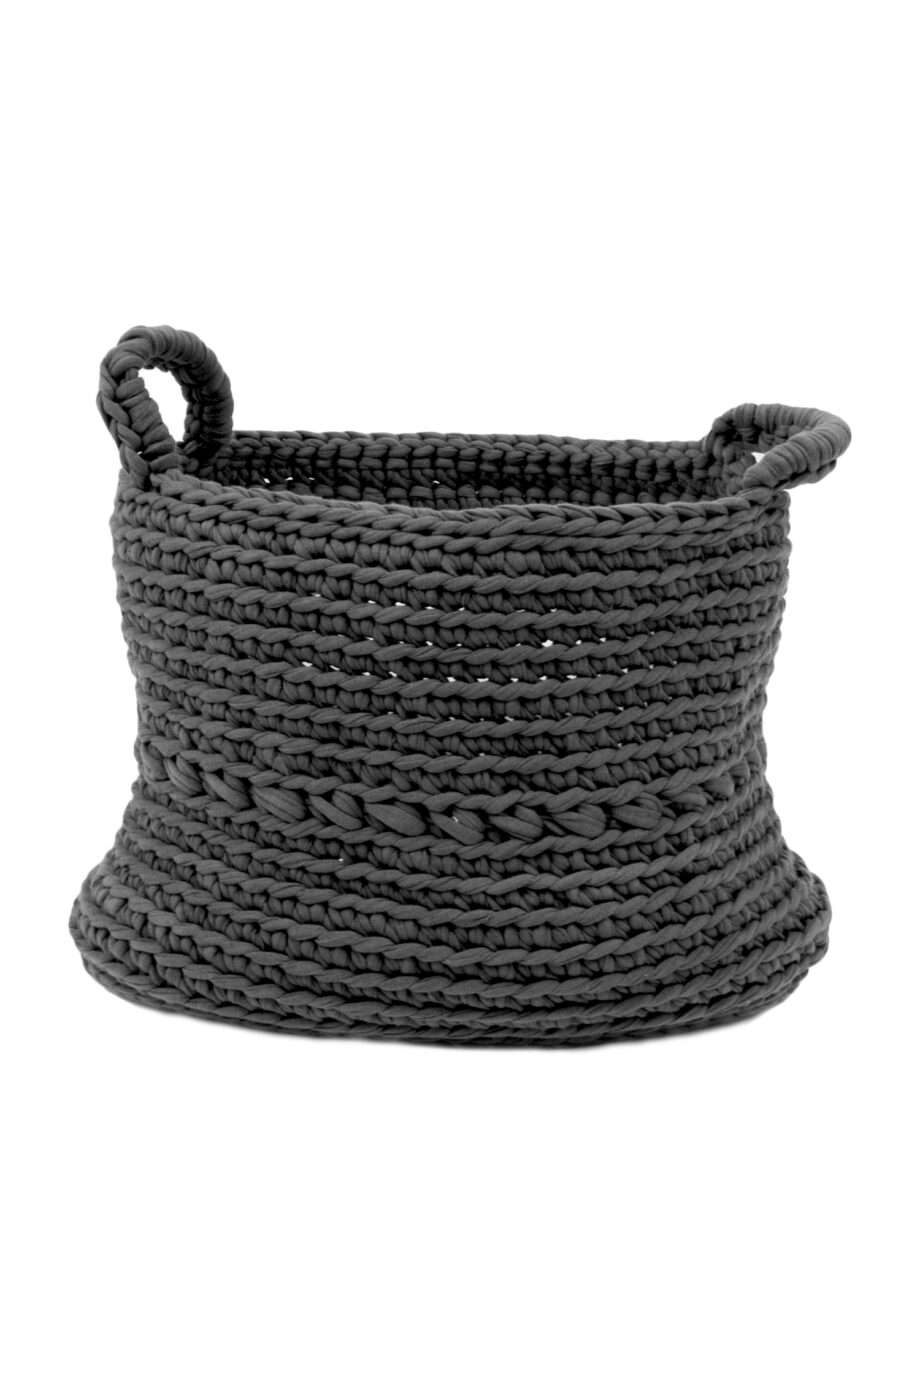 basic anthracite crochet cotton basket xlarge